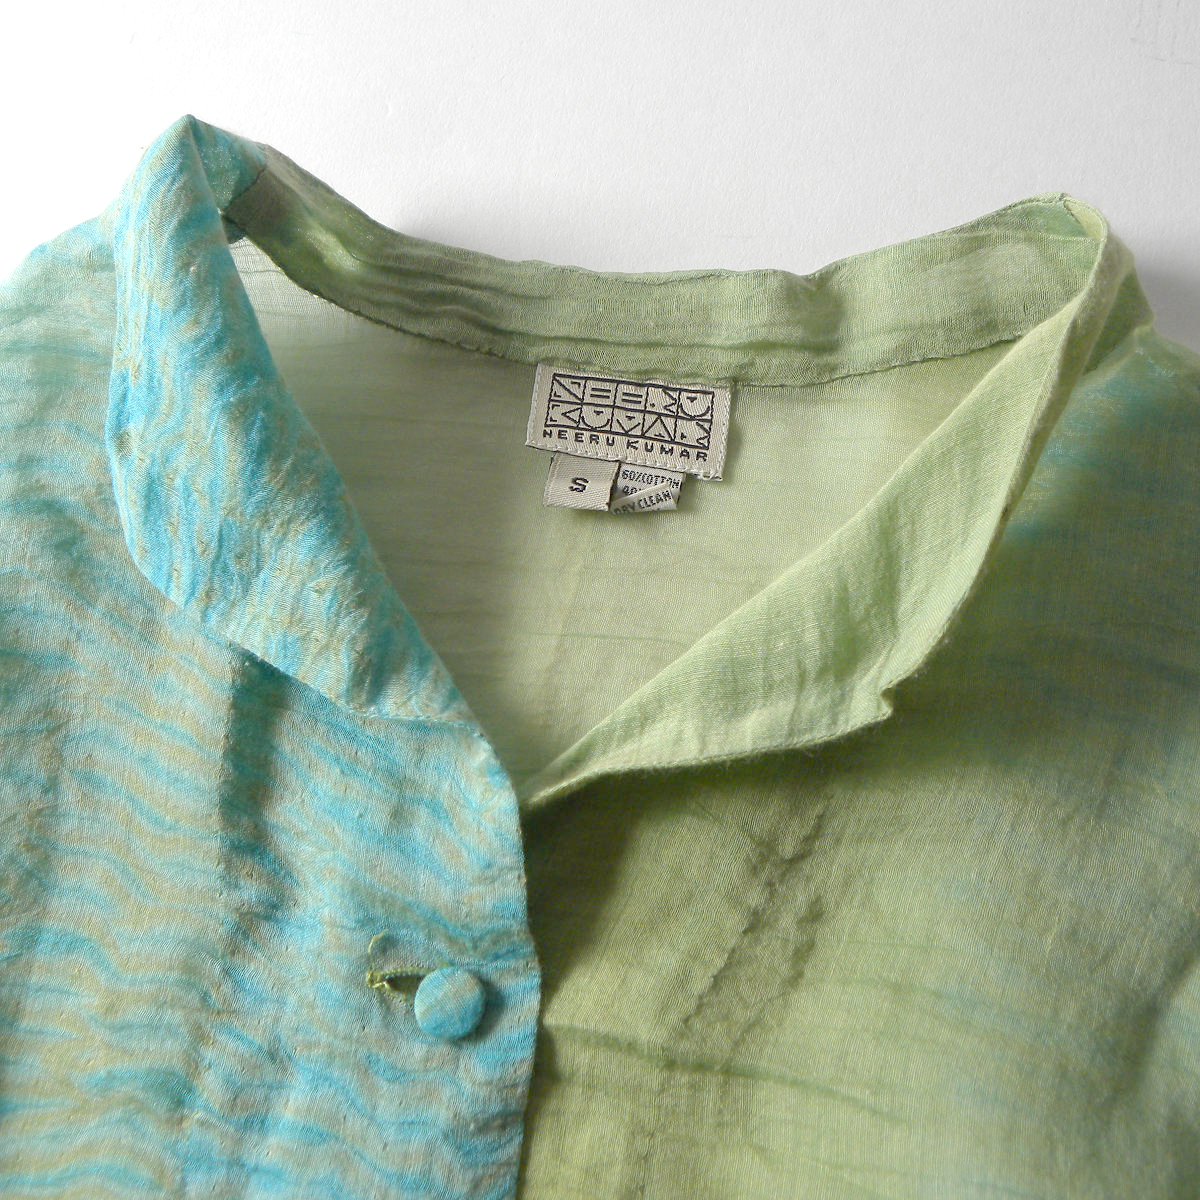 ネルークマール NEERU KUMAR 天然素材の心地良い着心地 コットンシルクシアーシャツジャケット 羽織り ショート丈 36 インド製 l0426-3の画像3